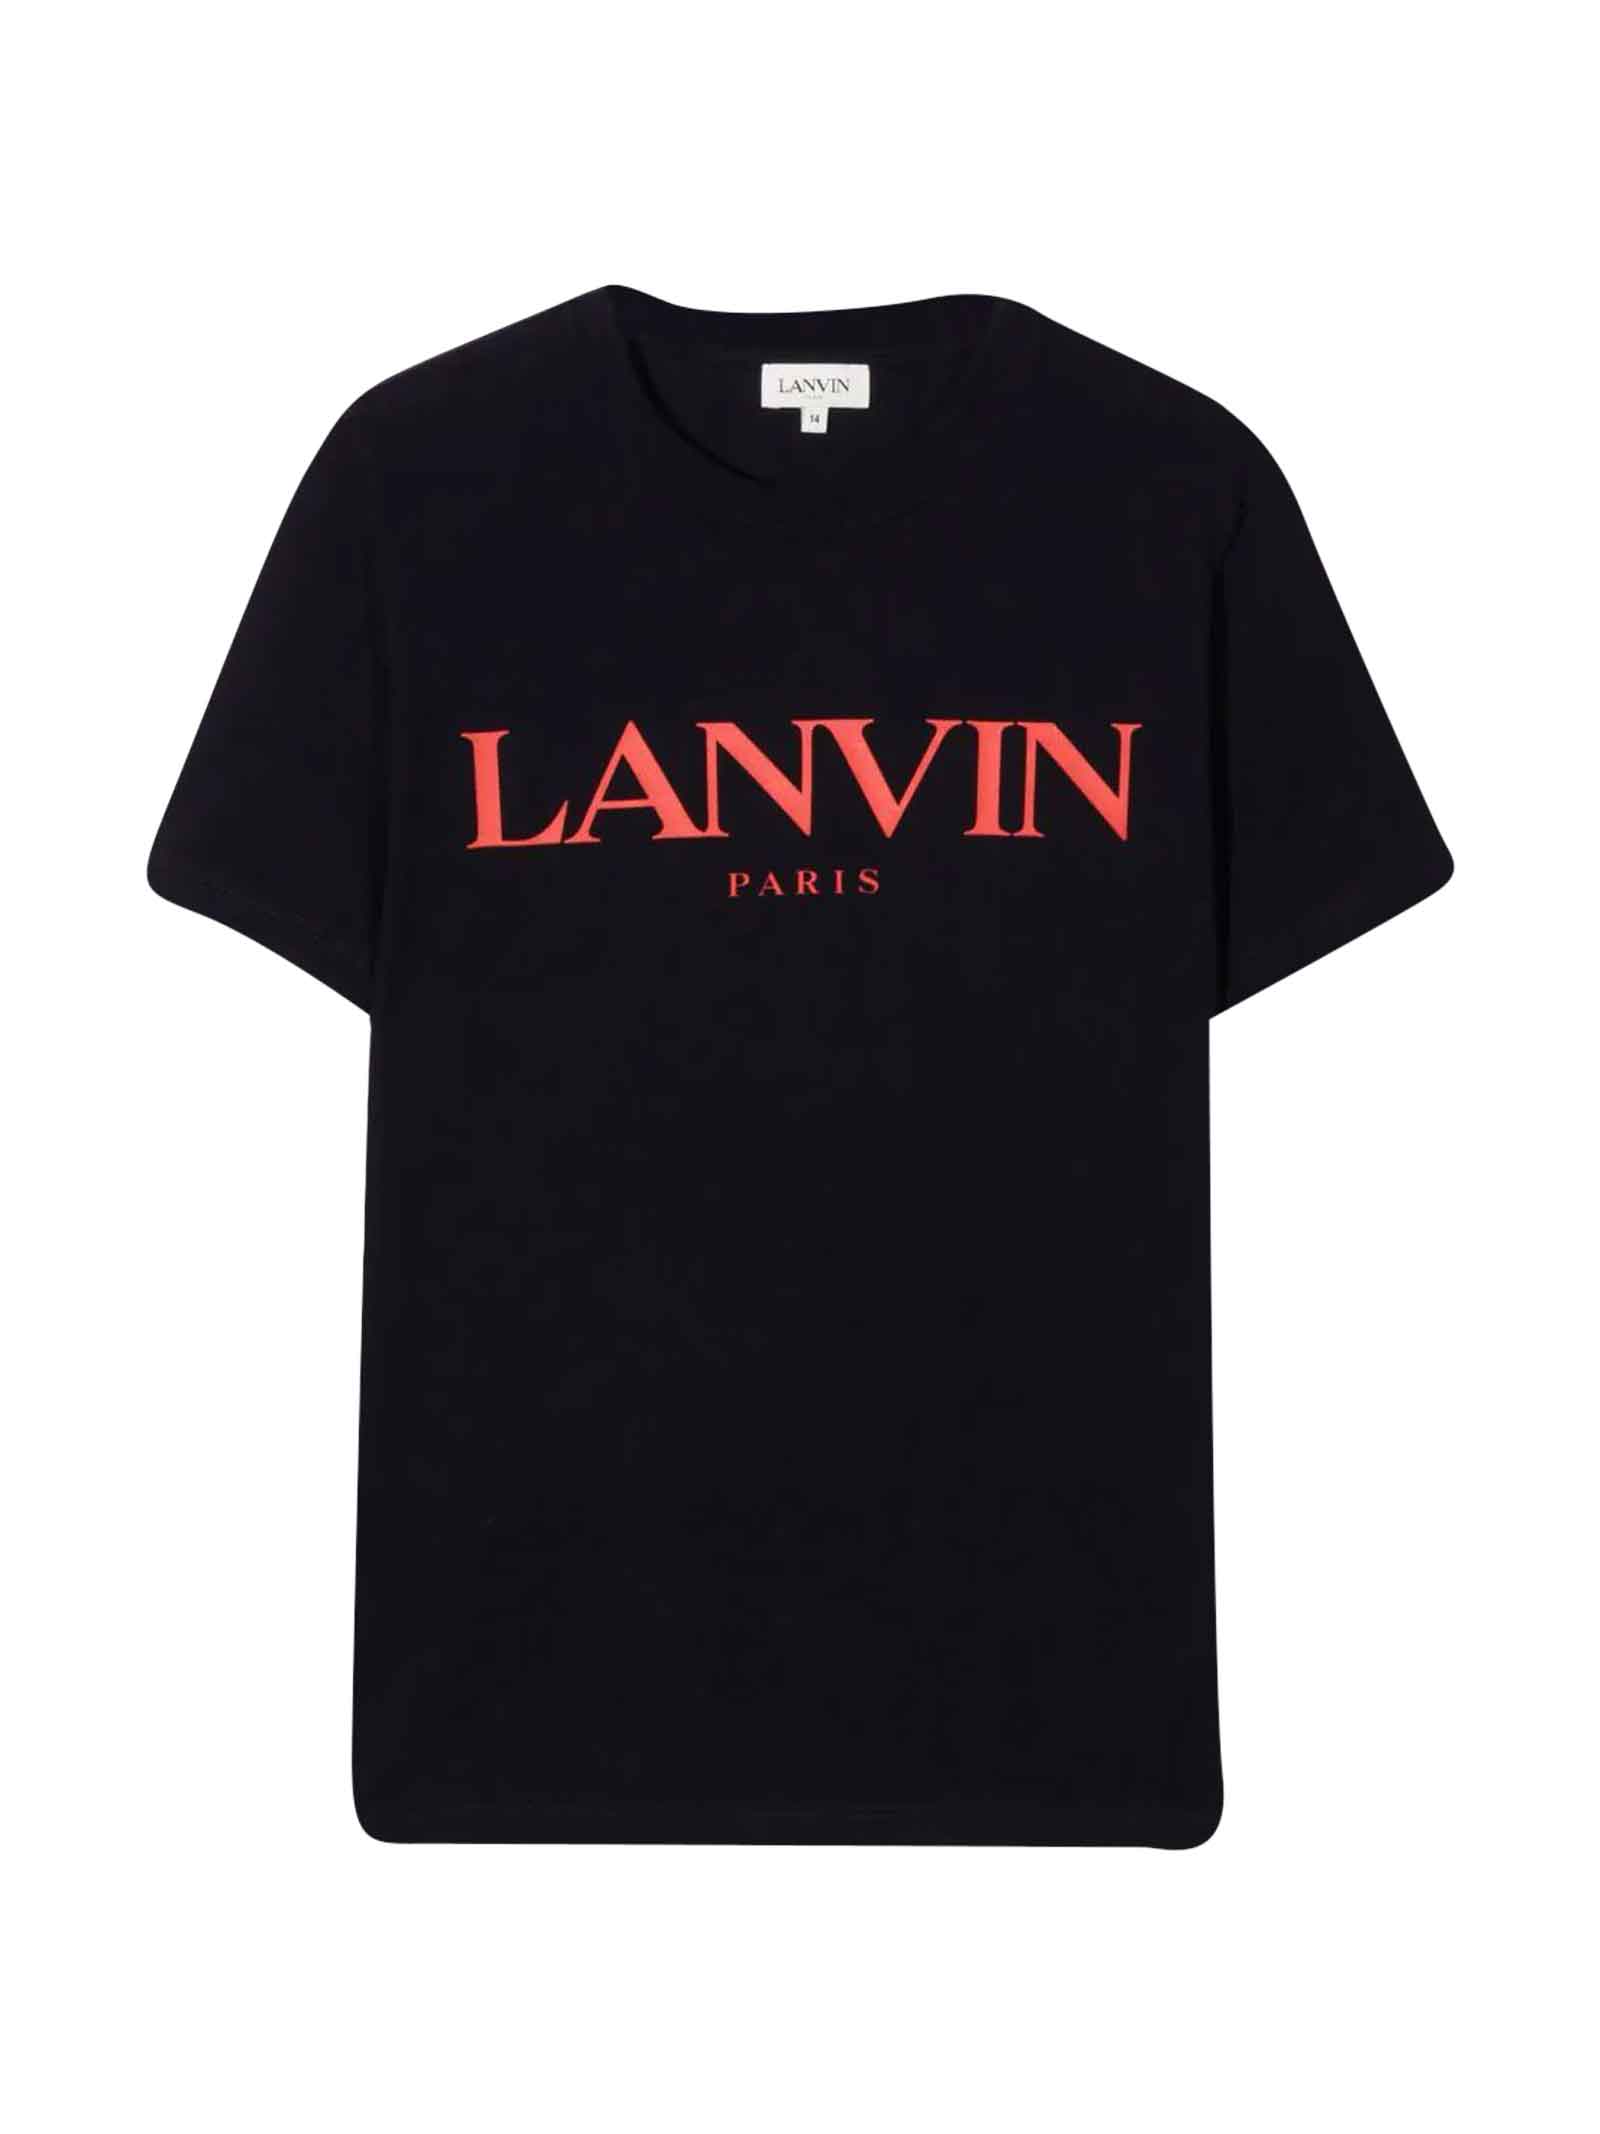 Lanvin Black Unisex T-shirt